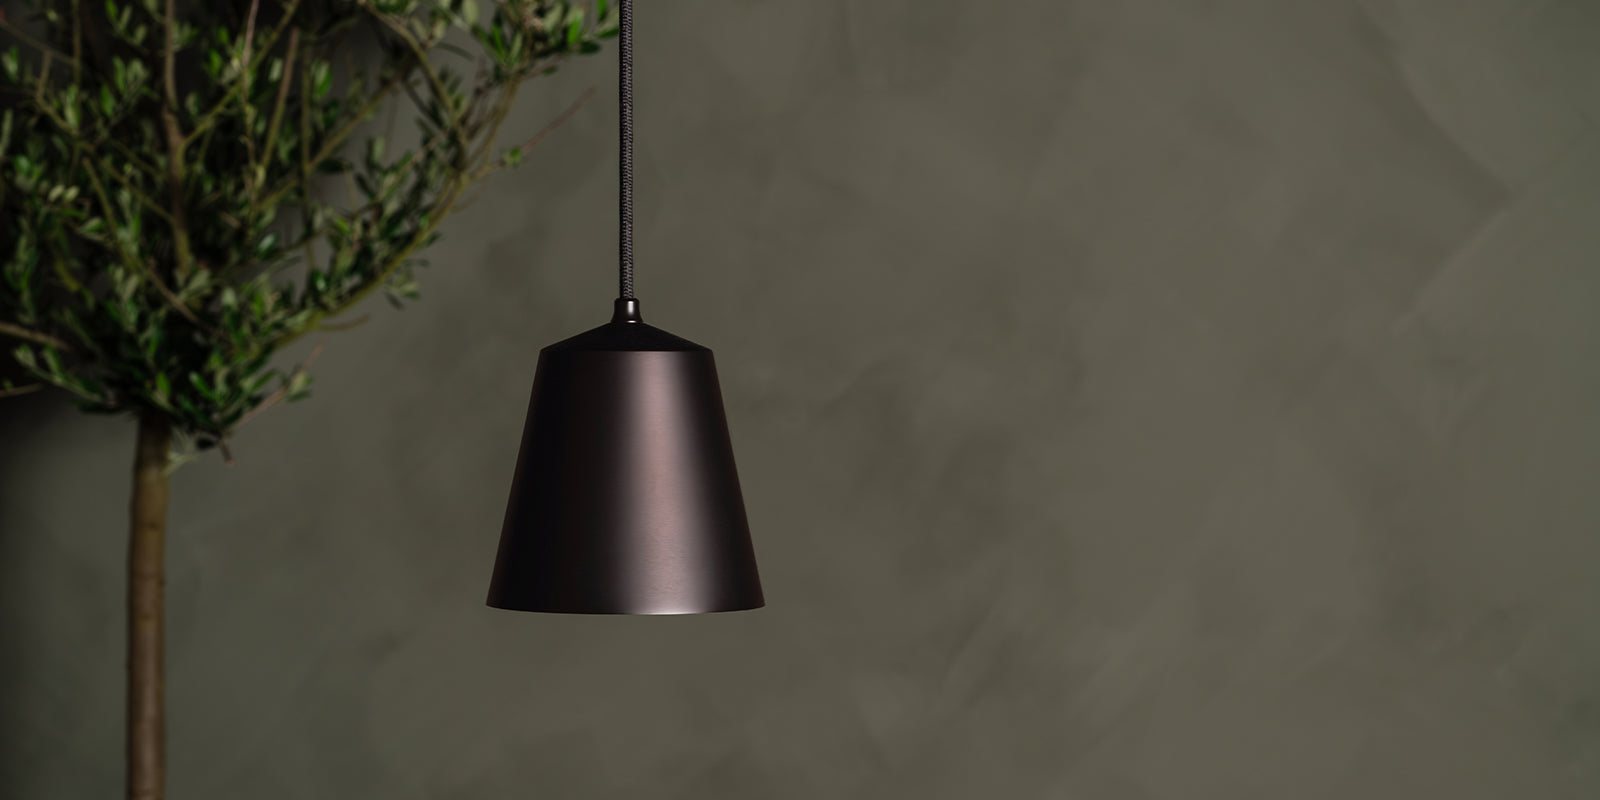 Jak rozmieścić lampy wiszące?